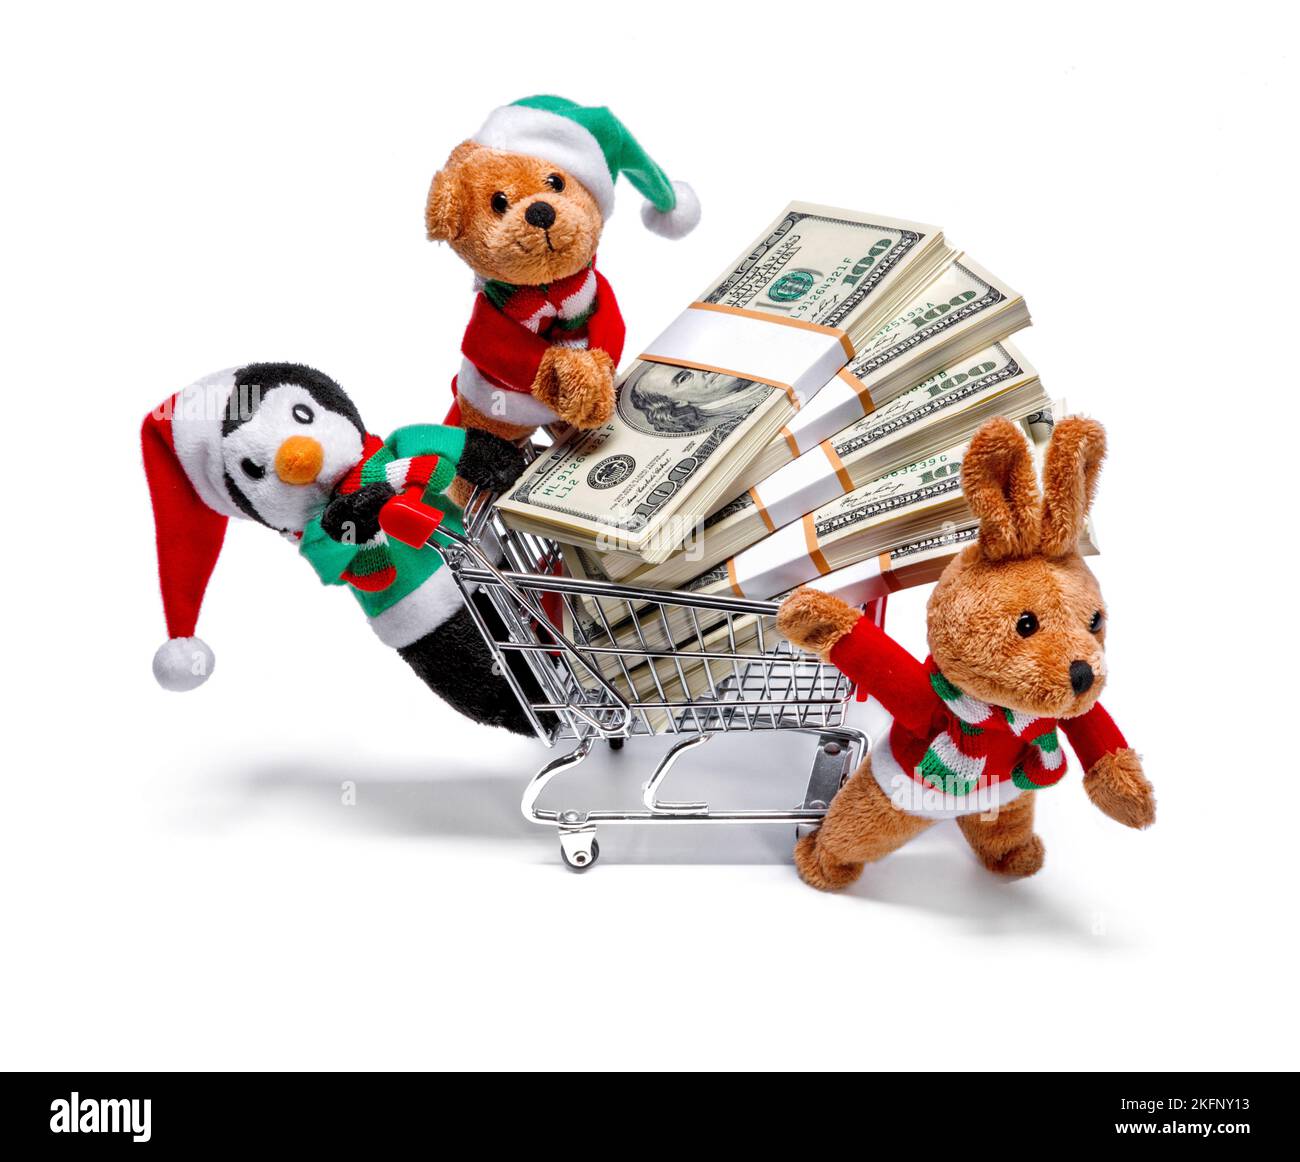 Les aides du Père Noël avec un panier plein d'argent. Concept de Noël amusant Banque D'Images